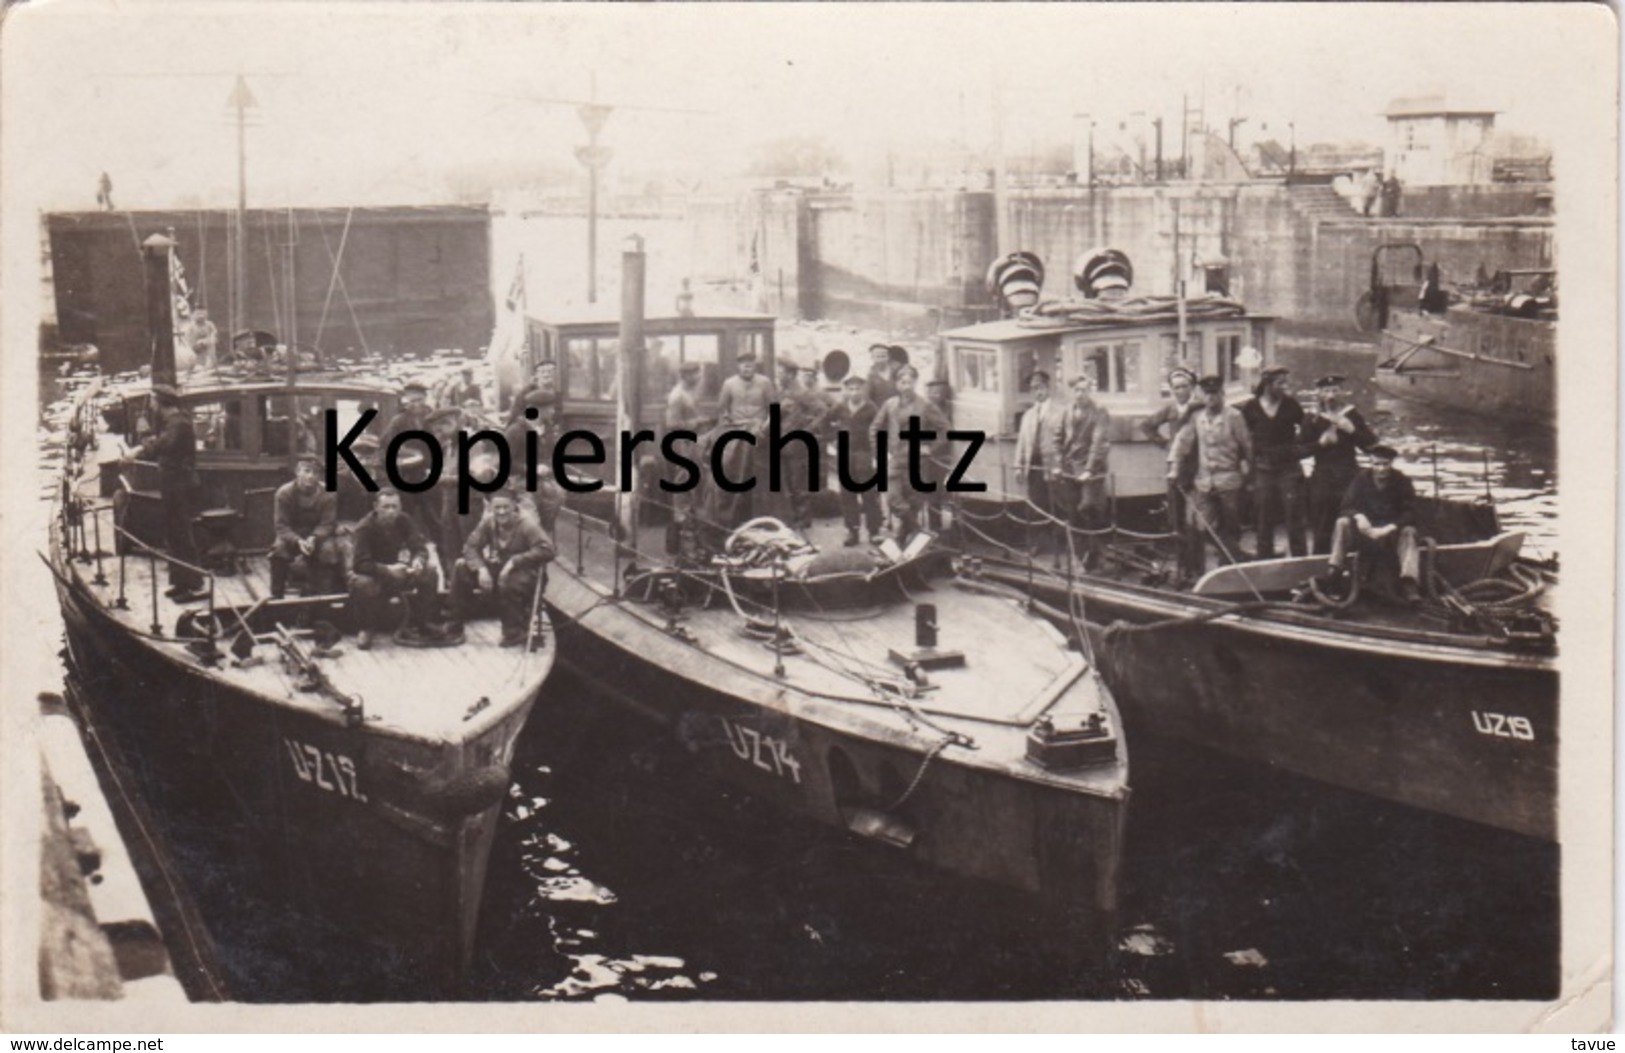 Alte Fotopostkarte Aus Dem 1. Weltkrieg -U-Boot-Zerstörer Im Hafen- - Matériel